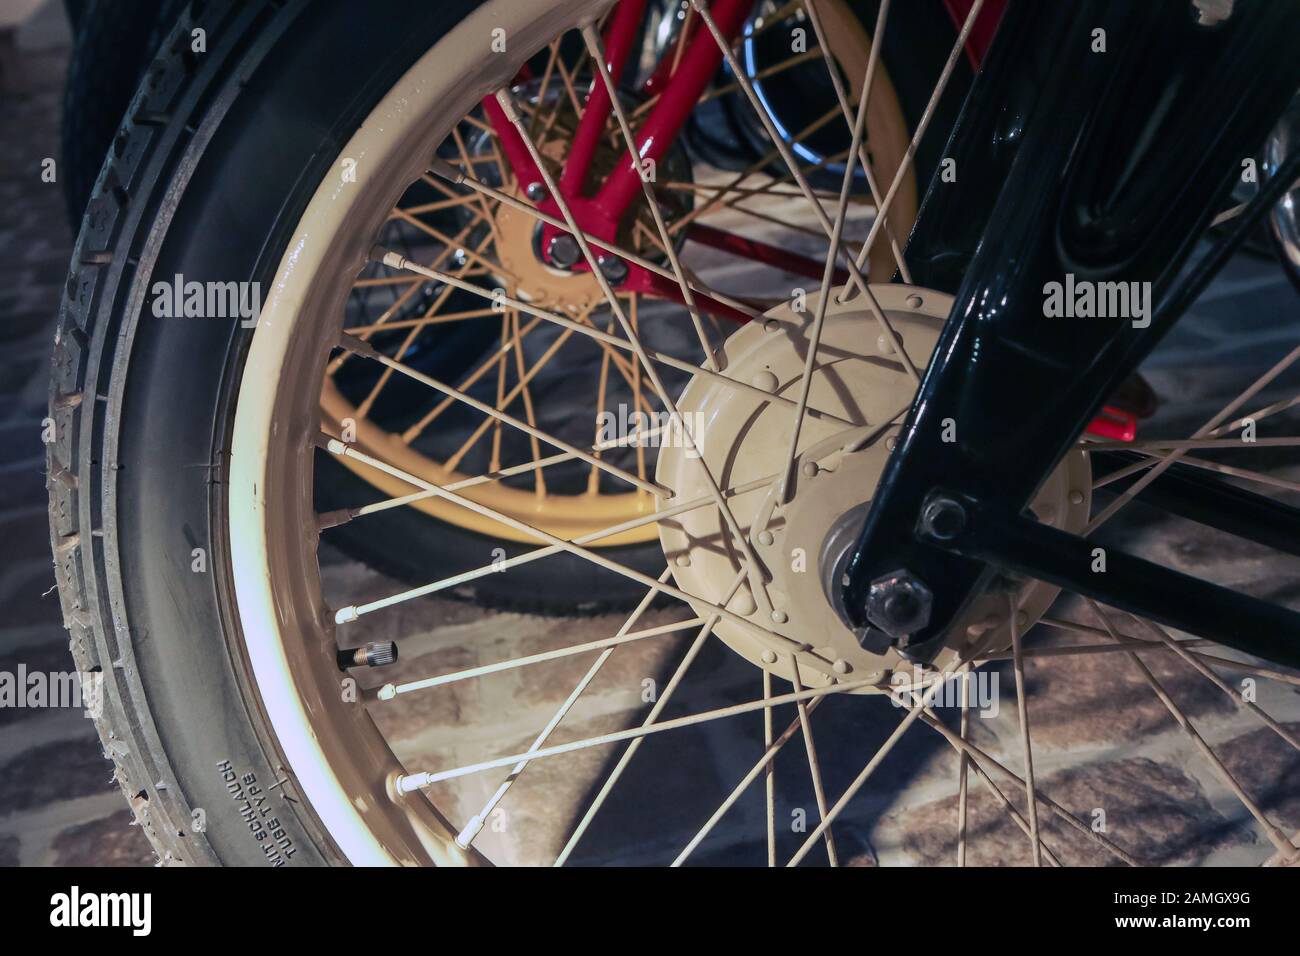 Le détail de l'ancienne moto avec une partie du châssis, de la suspension et de la roue avant avec laçage. Banque D'Images